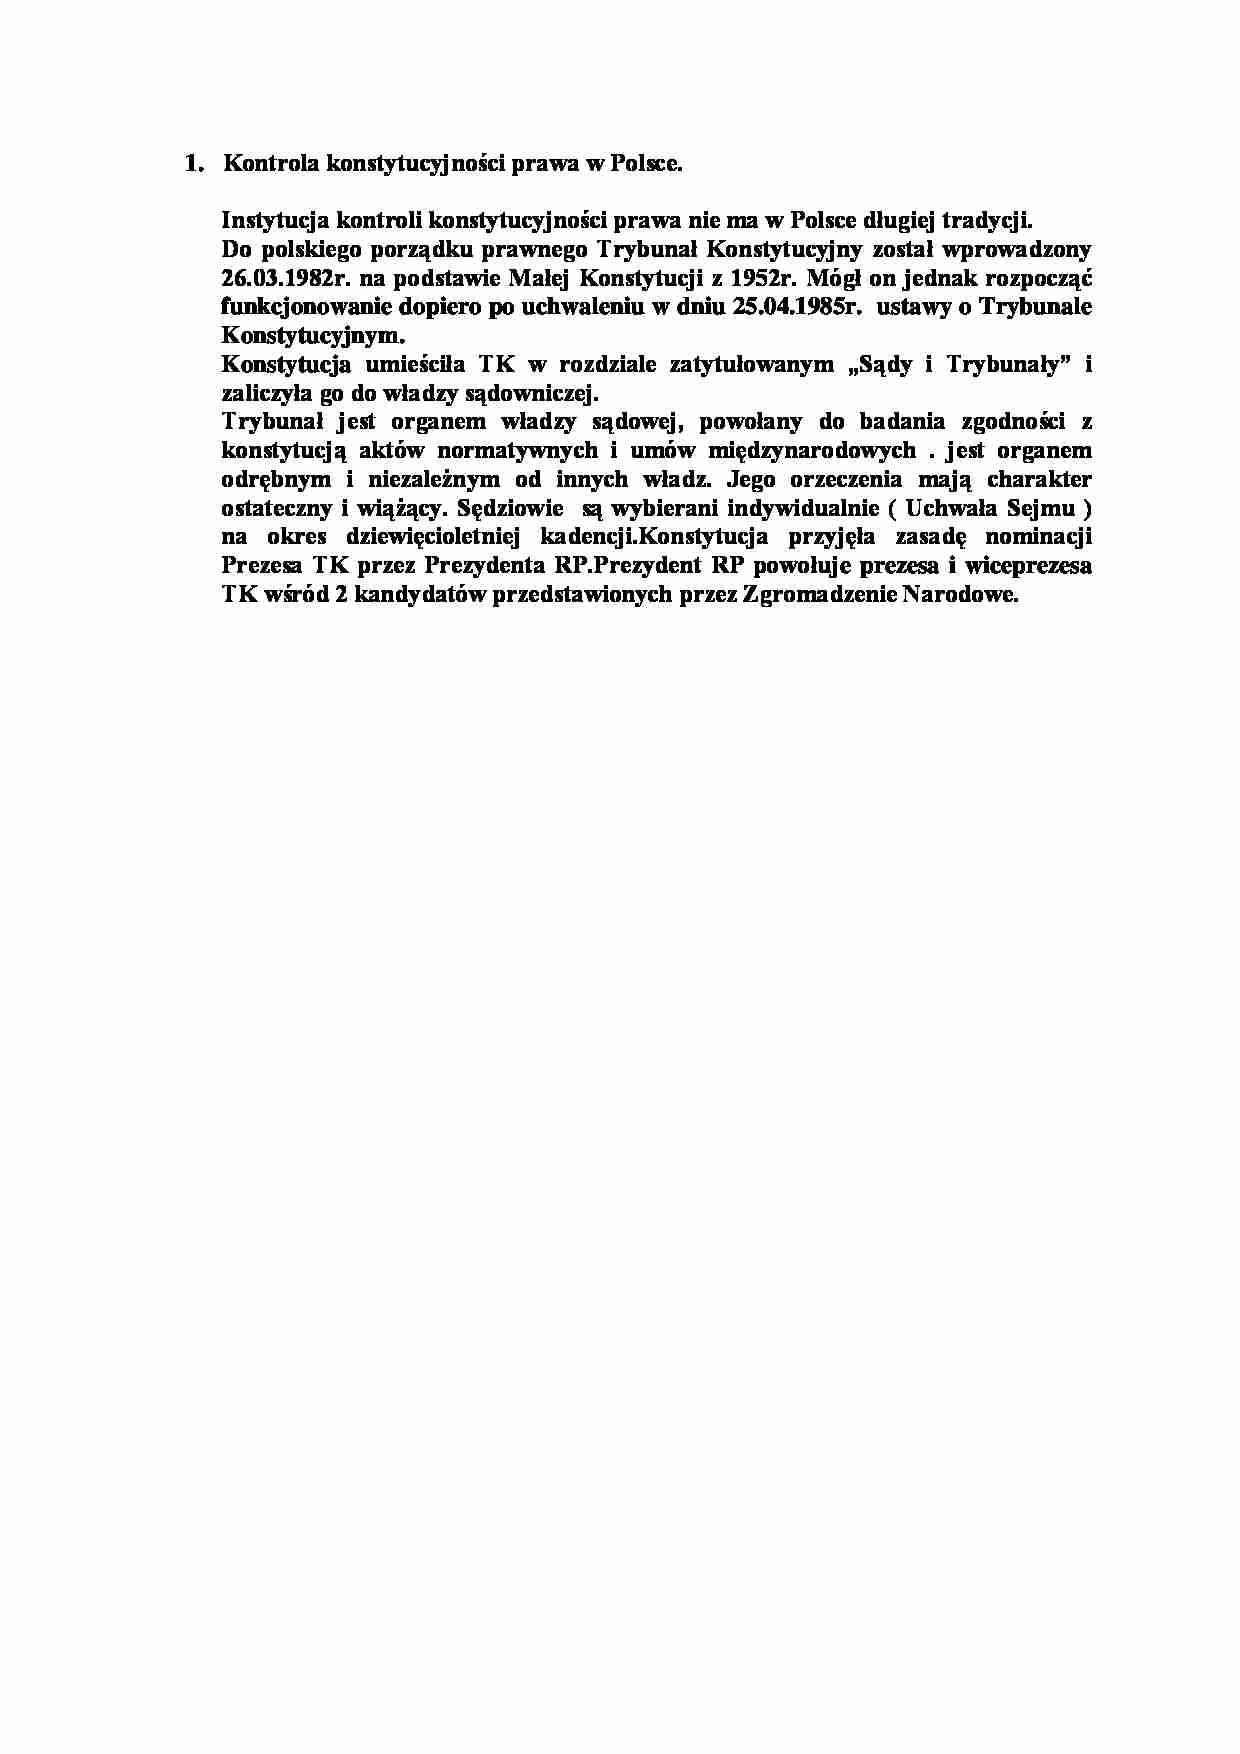 Kontrola konstytucyjności prawa w Polsce-opracowanie - strona 1